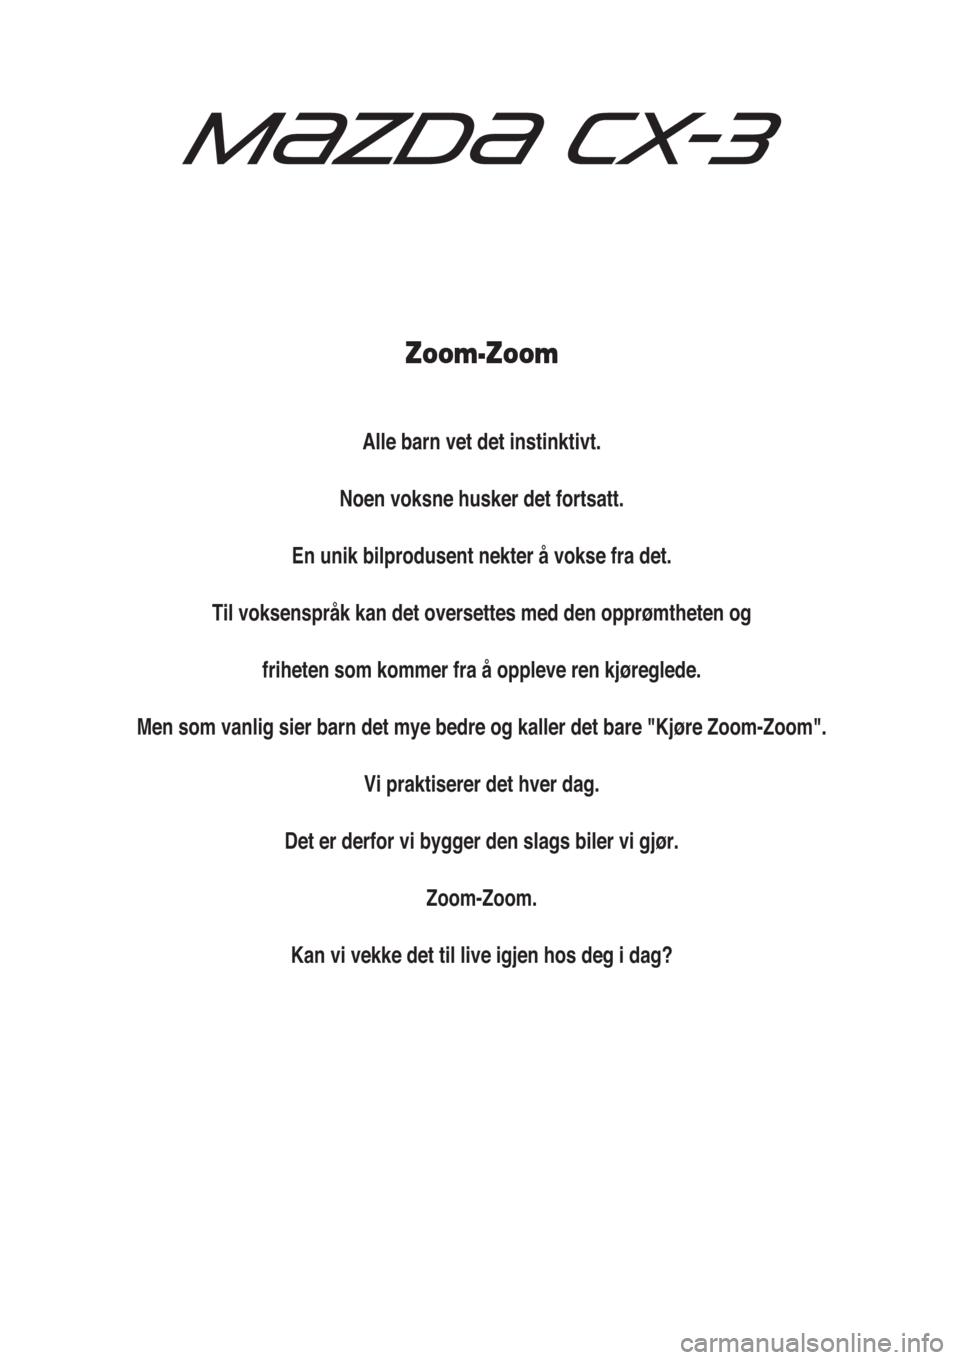 MAZDA MODEL CX-3 2015  Brukerhåndbok (in Norwegian) Zoom-Zoom
Alle barn vet det instinktivt.
Noen voksne husker det fortsatt.
En unik bilprodusent nekter å vokse fra det.
Til voksenspråk kan det oversettes med den opprømtheten og
friheten som kommer